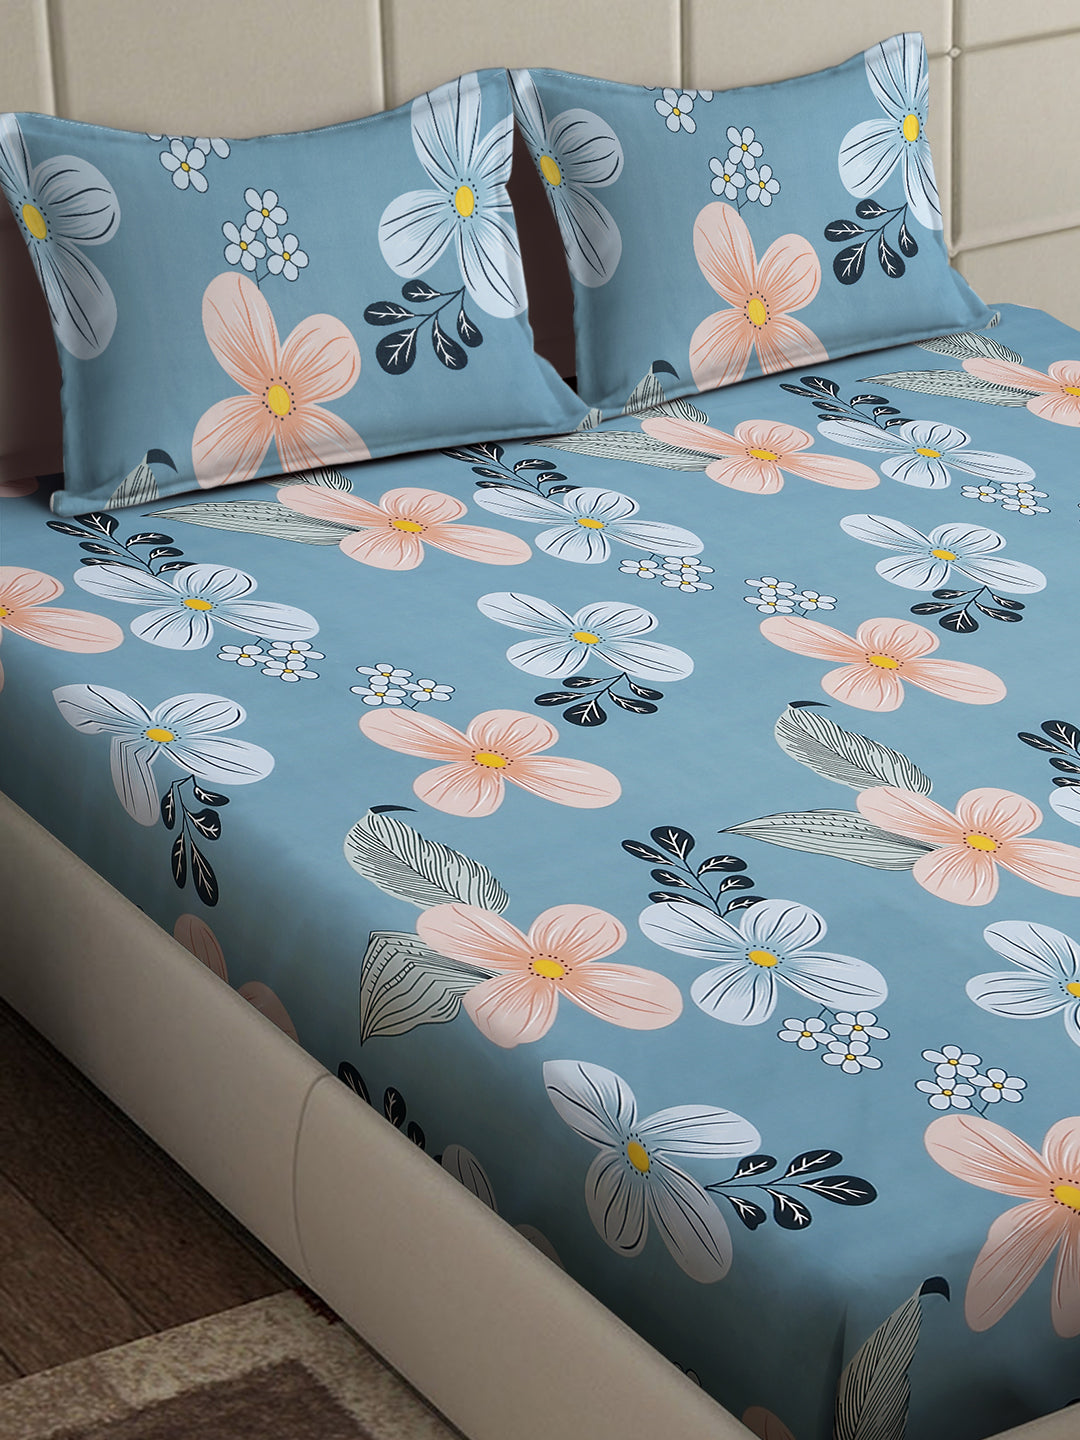 Arrabi Blue Floral TC Cotton Blend King Size Bedsheet with 2 Pillow Covers (250 x 215 cm)